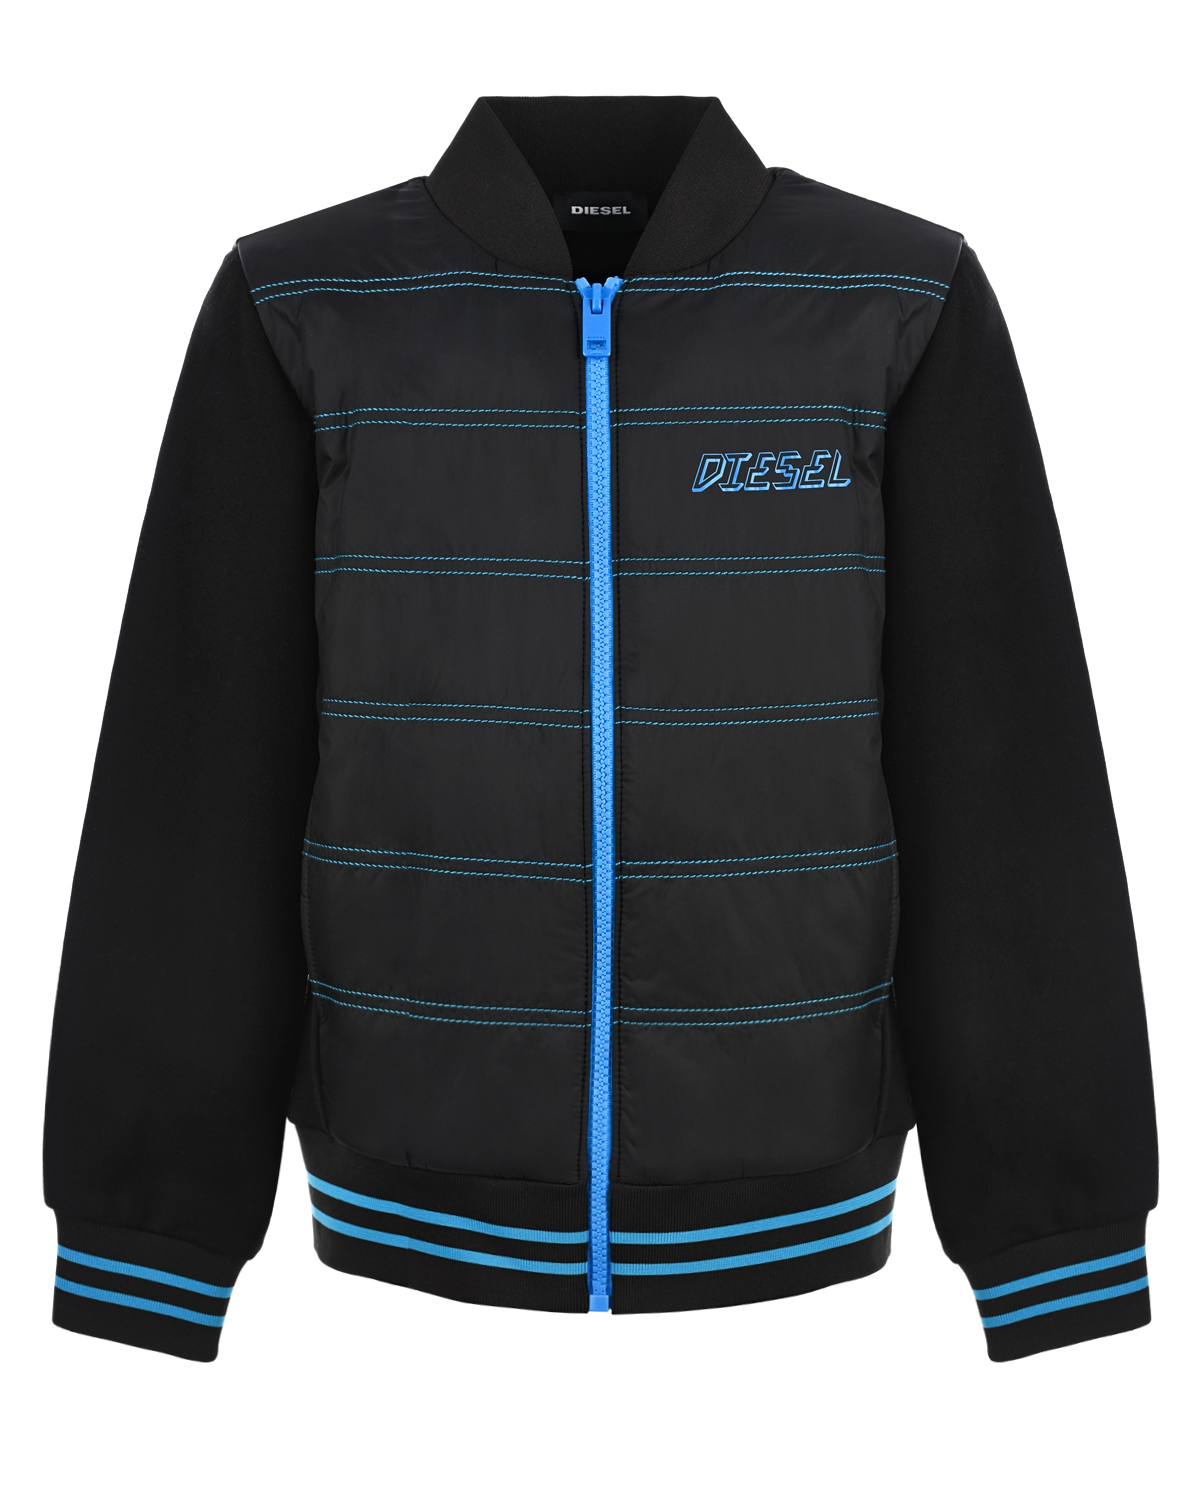 Утепленная спортивная куртка Diesel детская, размер 140, цвет черный - фото 1